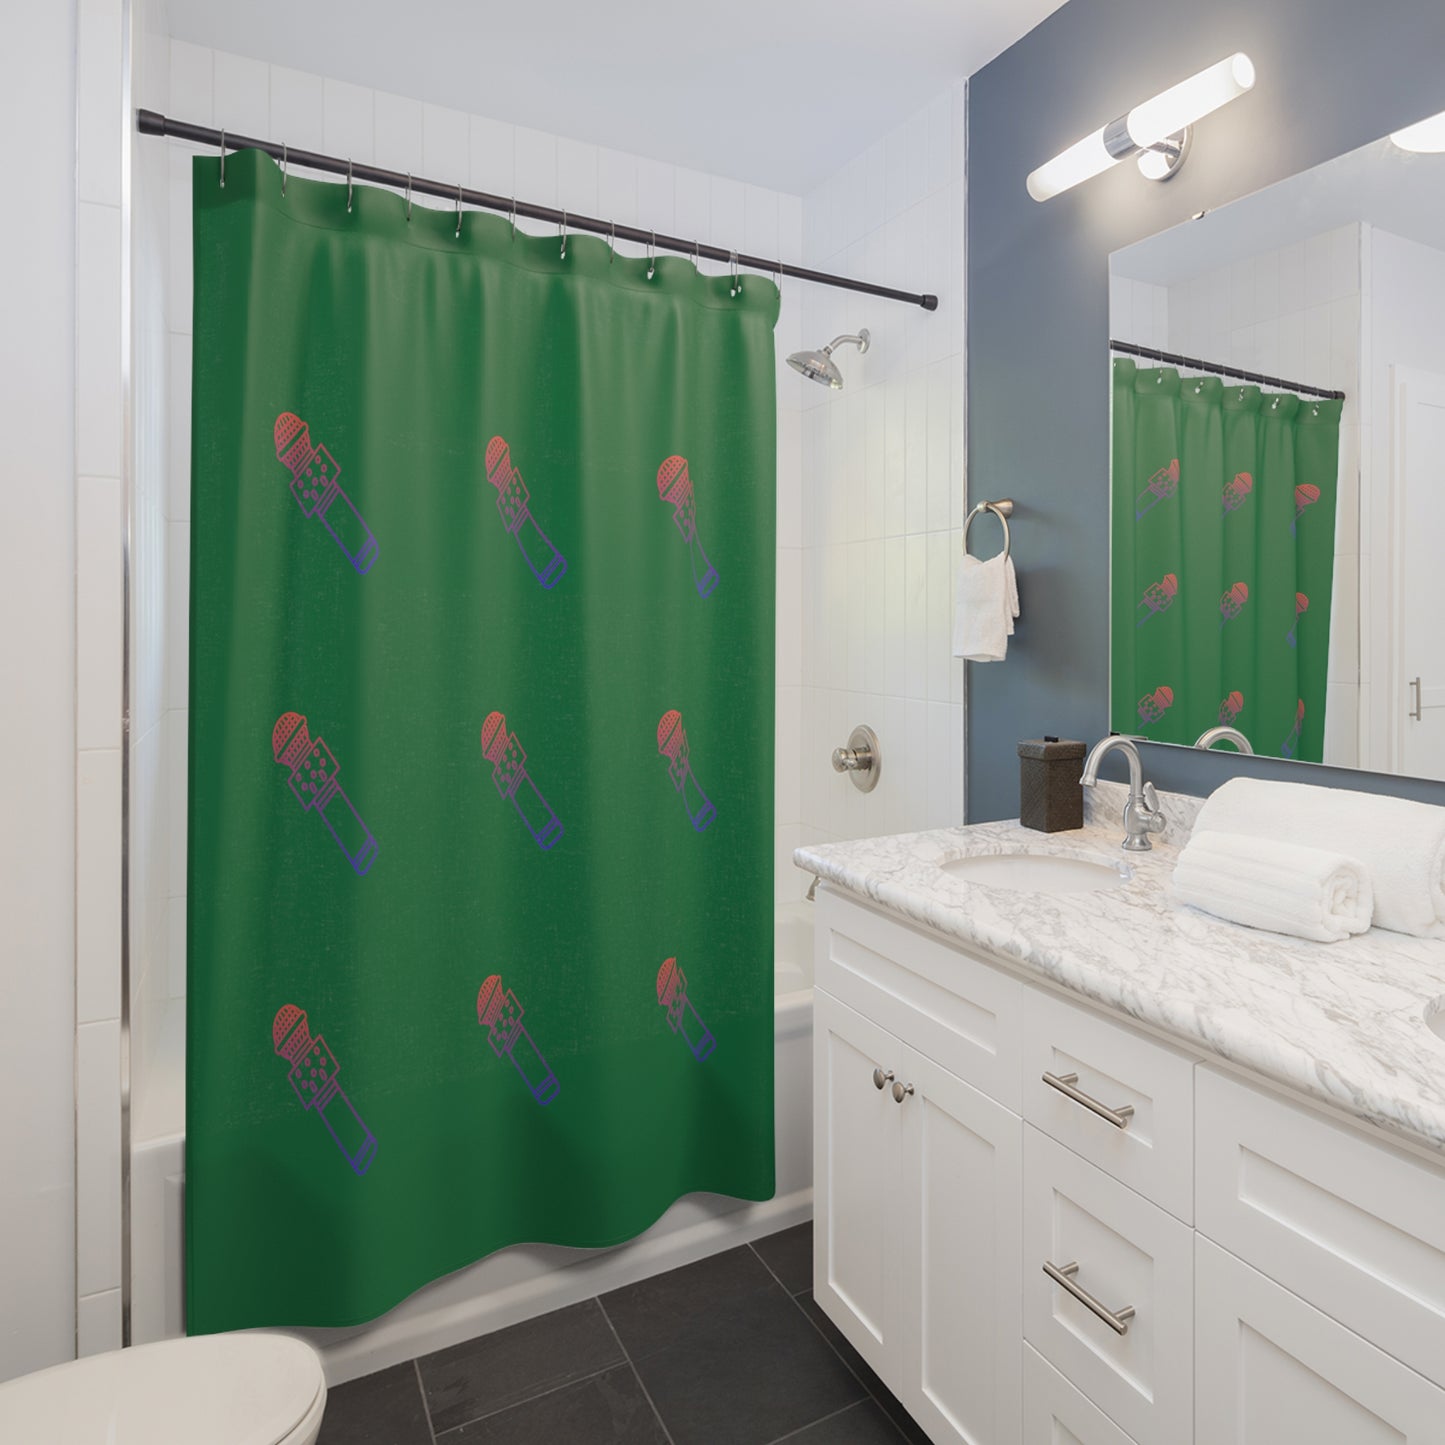 Shower Curtains: #2 Music Dark Green